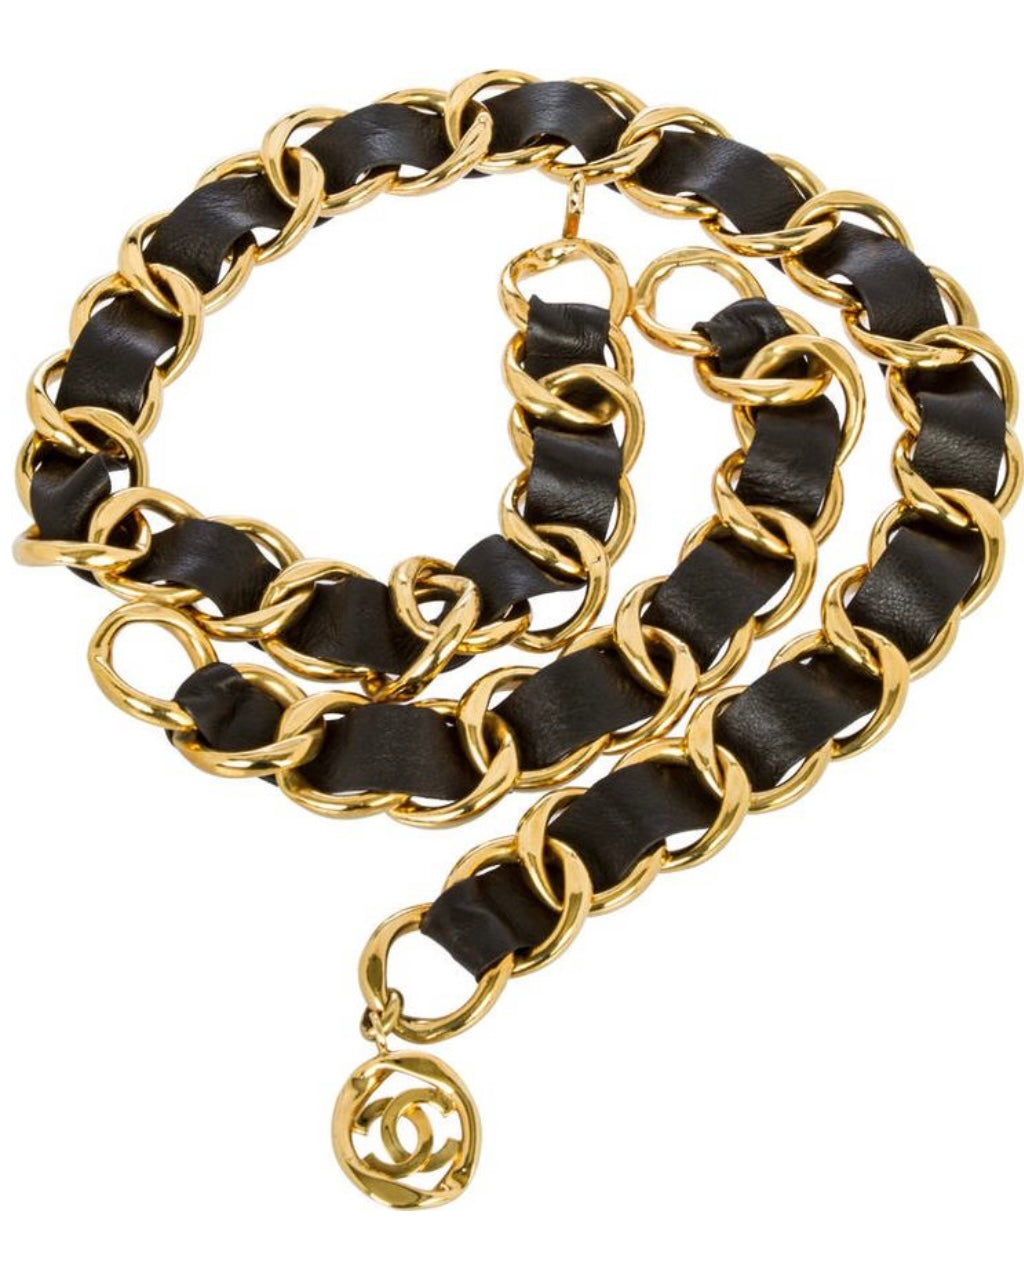 Vintage CHANEL Gold & Leather Chain link Belt